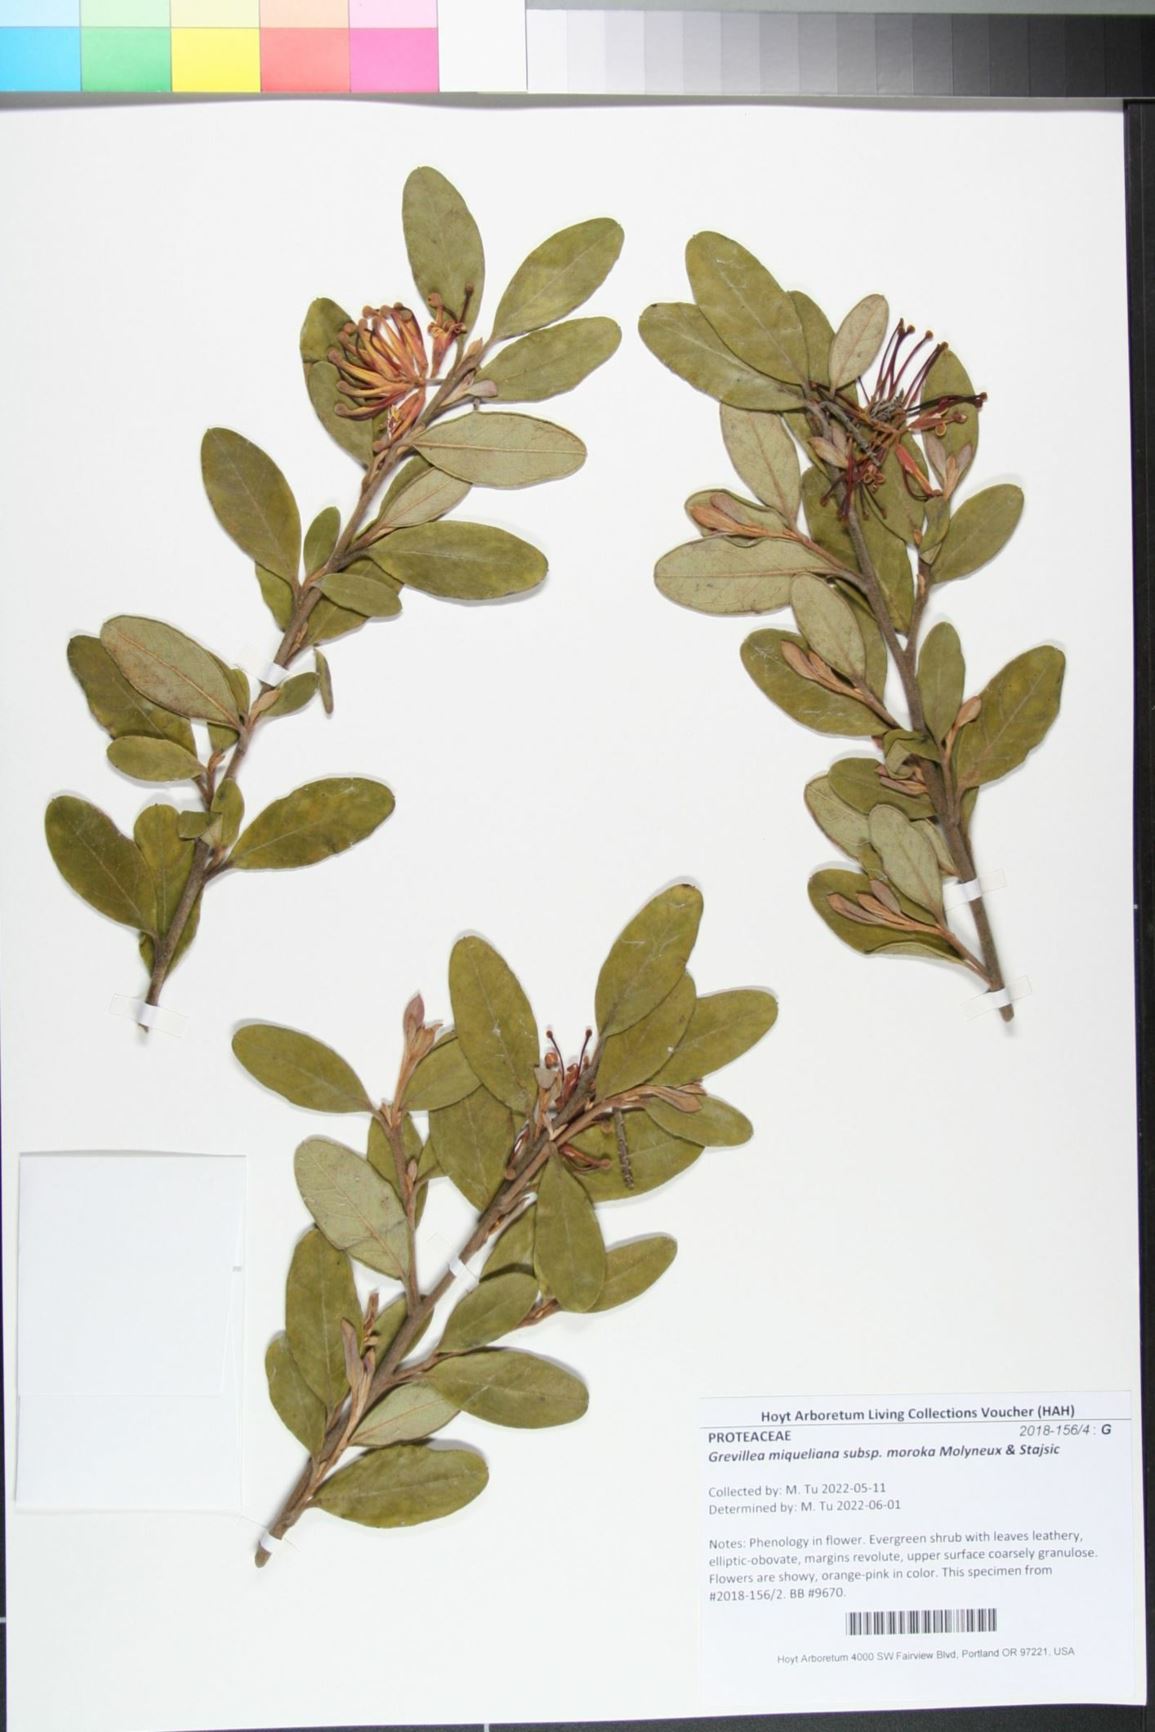 Grevillea miqueliana subsp. moroka - Moroka grevillea